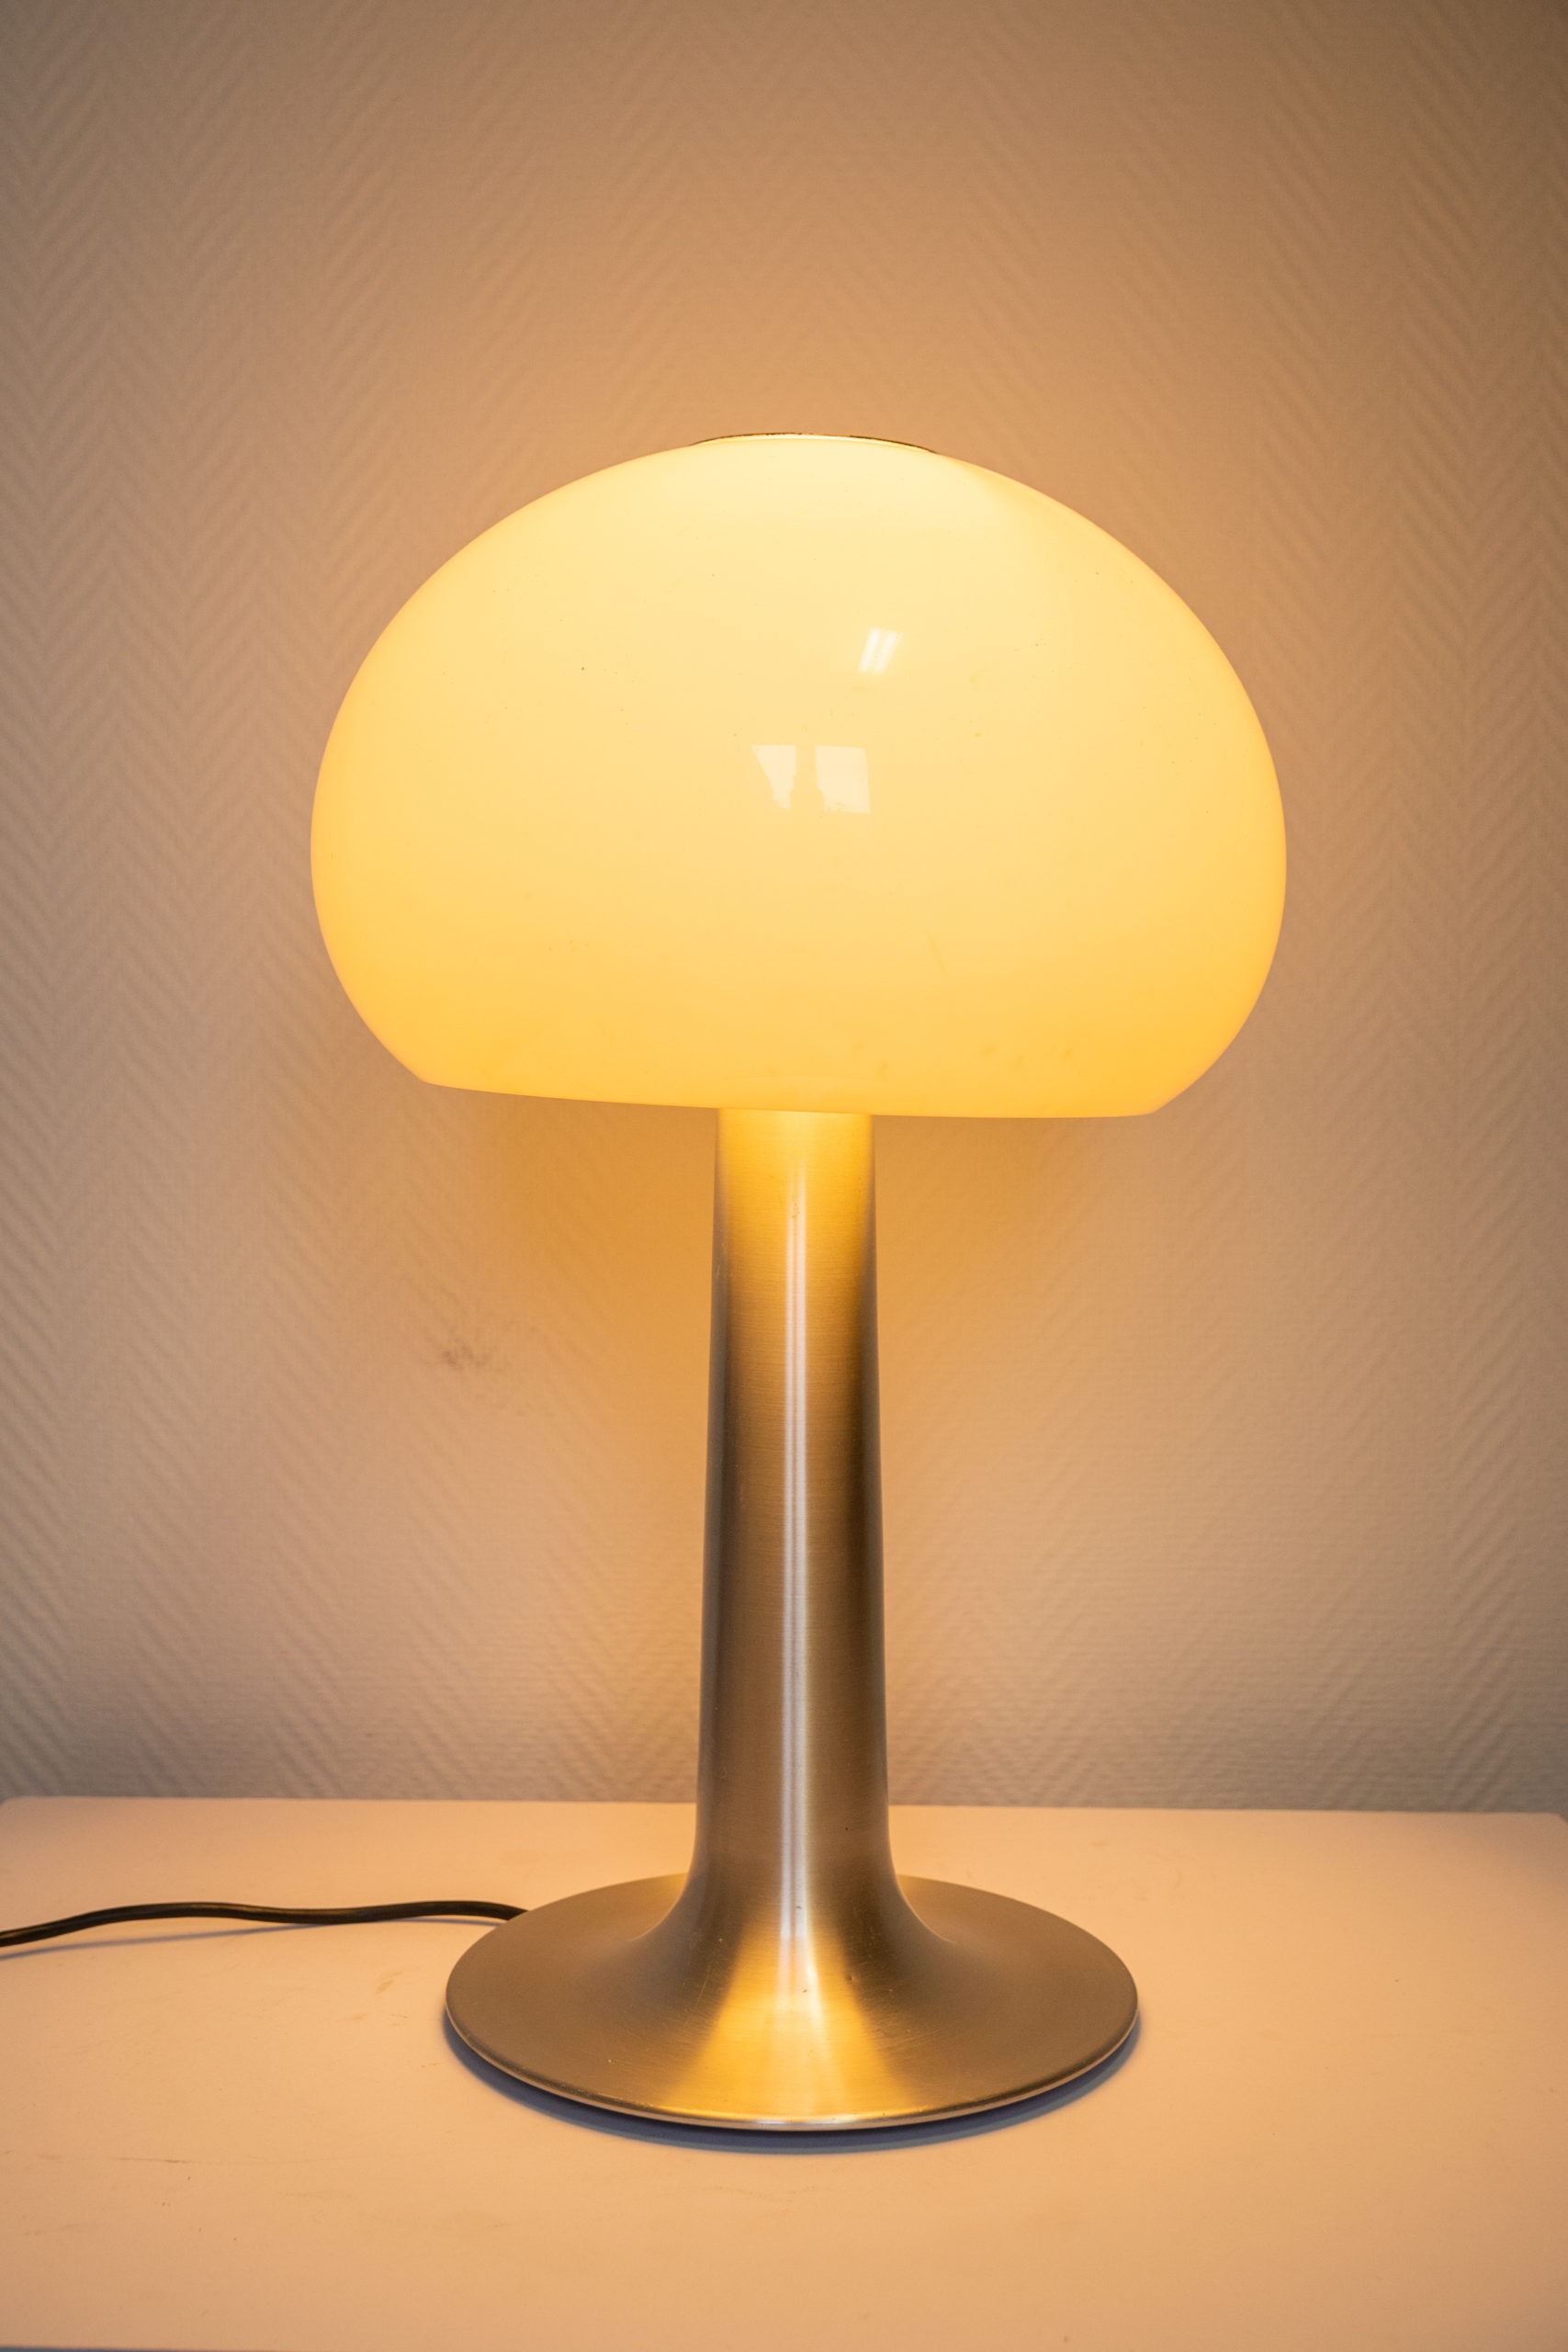 Lampe-champignon-aluminium-vintage-décoration-intérieur-idée-cadeau-noel-aurore-morisse-antiquaire-affaire-conclue-liège1